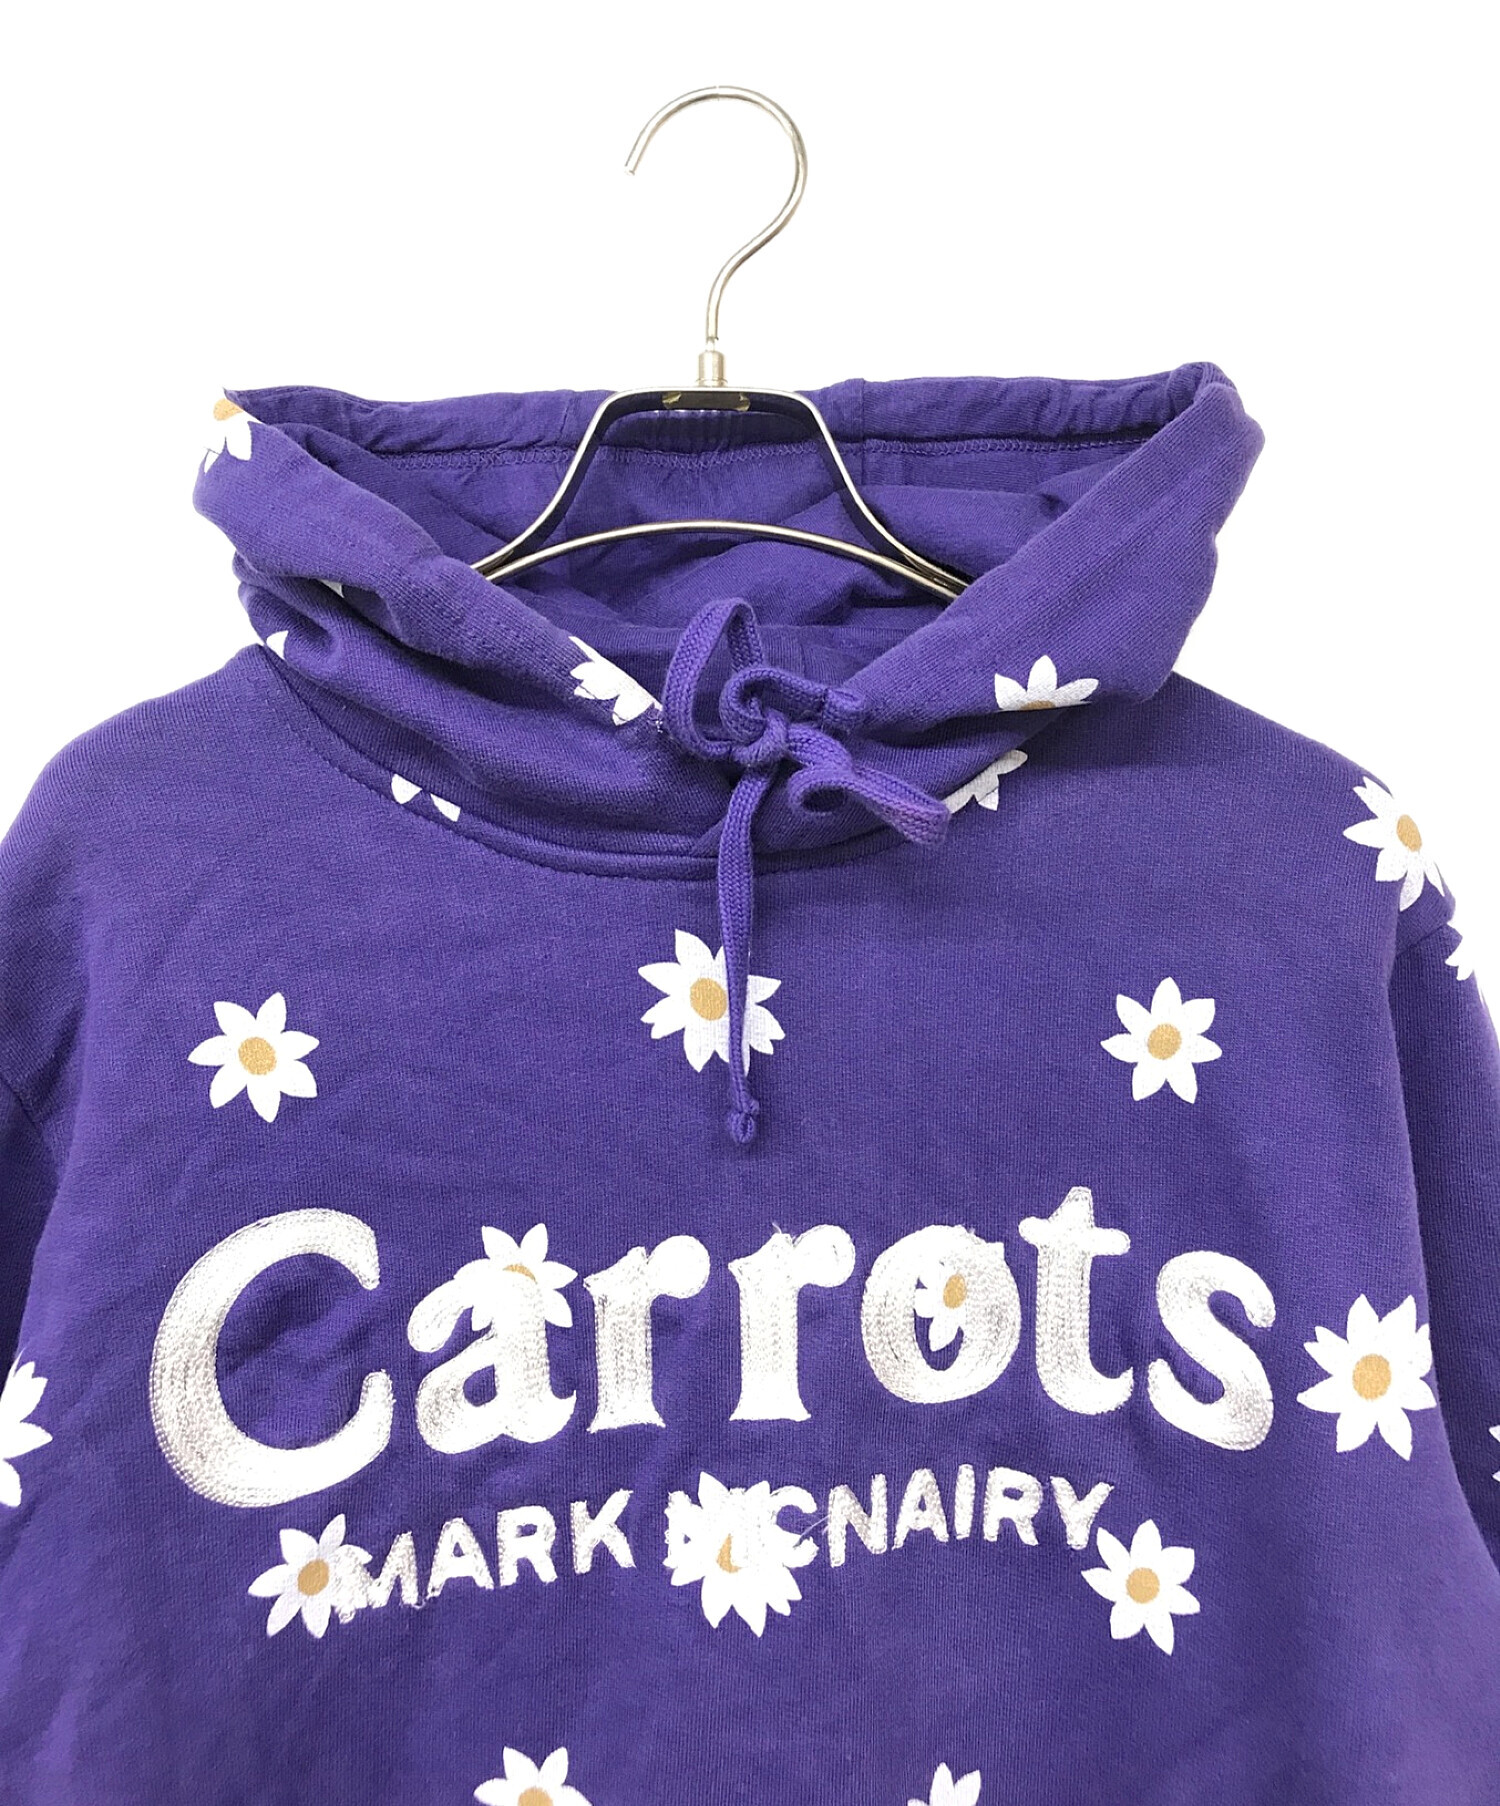 Mark McNairy × Carrots By Anwar Carrots (マークマクナイリー× キャロッツ) コラボ花柄パーカー パープル  サイズ:S